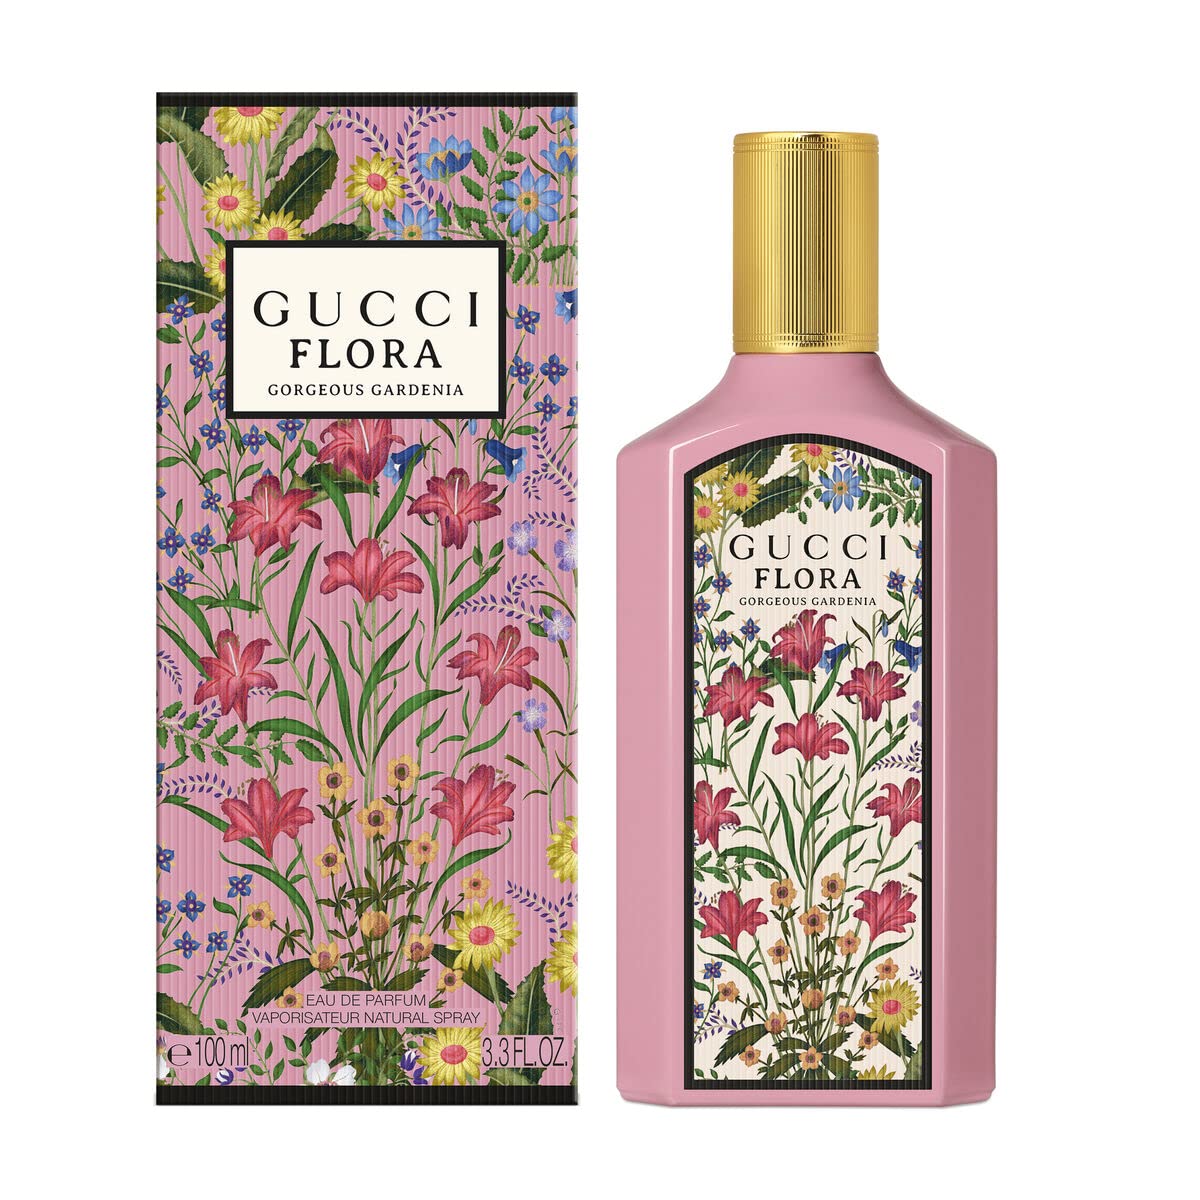 Flora Gorgeous Gardenia by Gucci 3.3 oz EDP Spray for Women